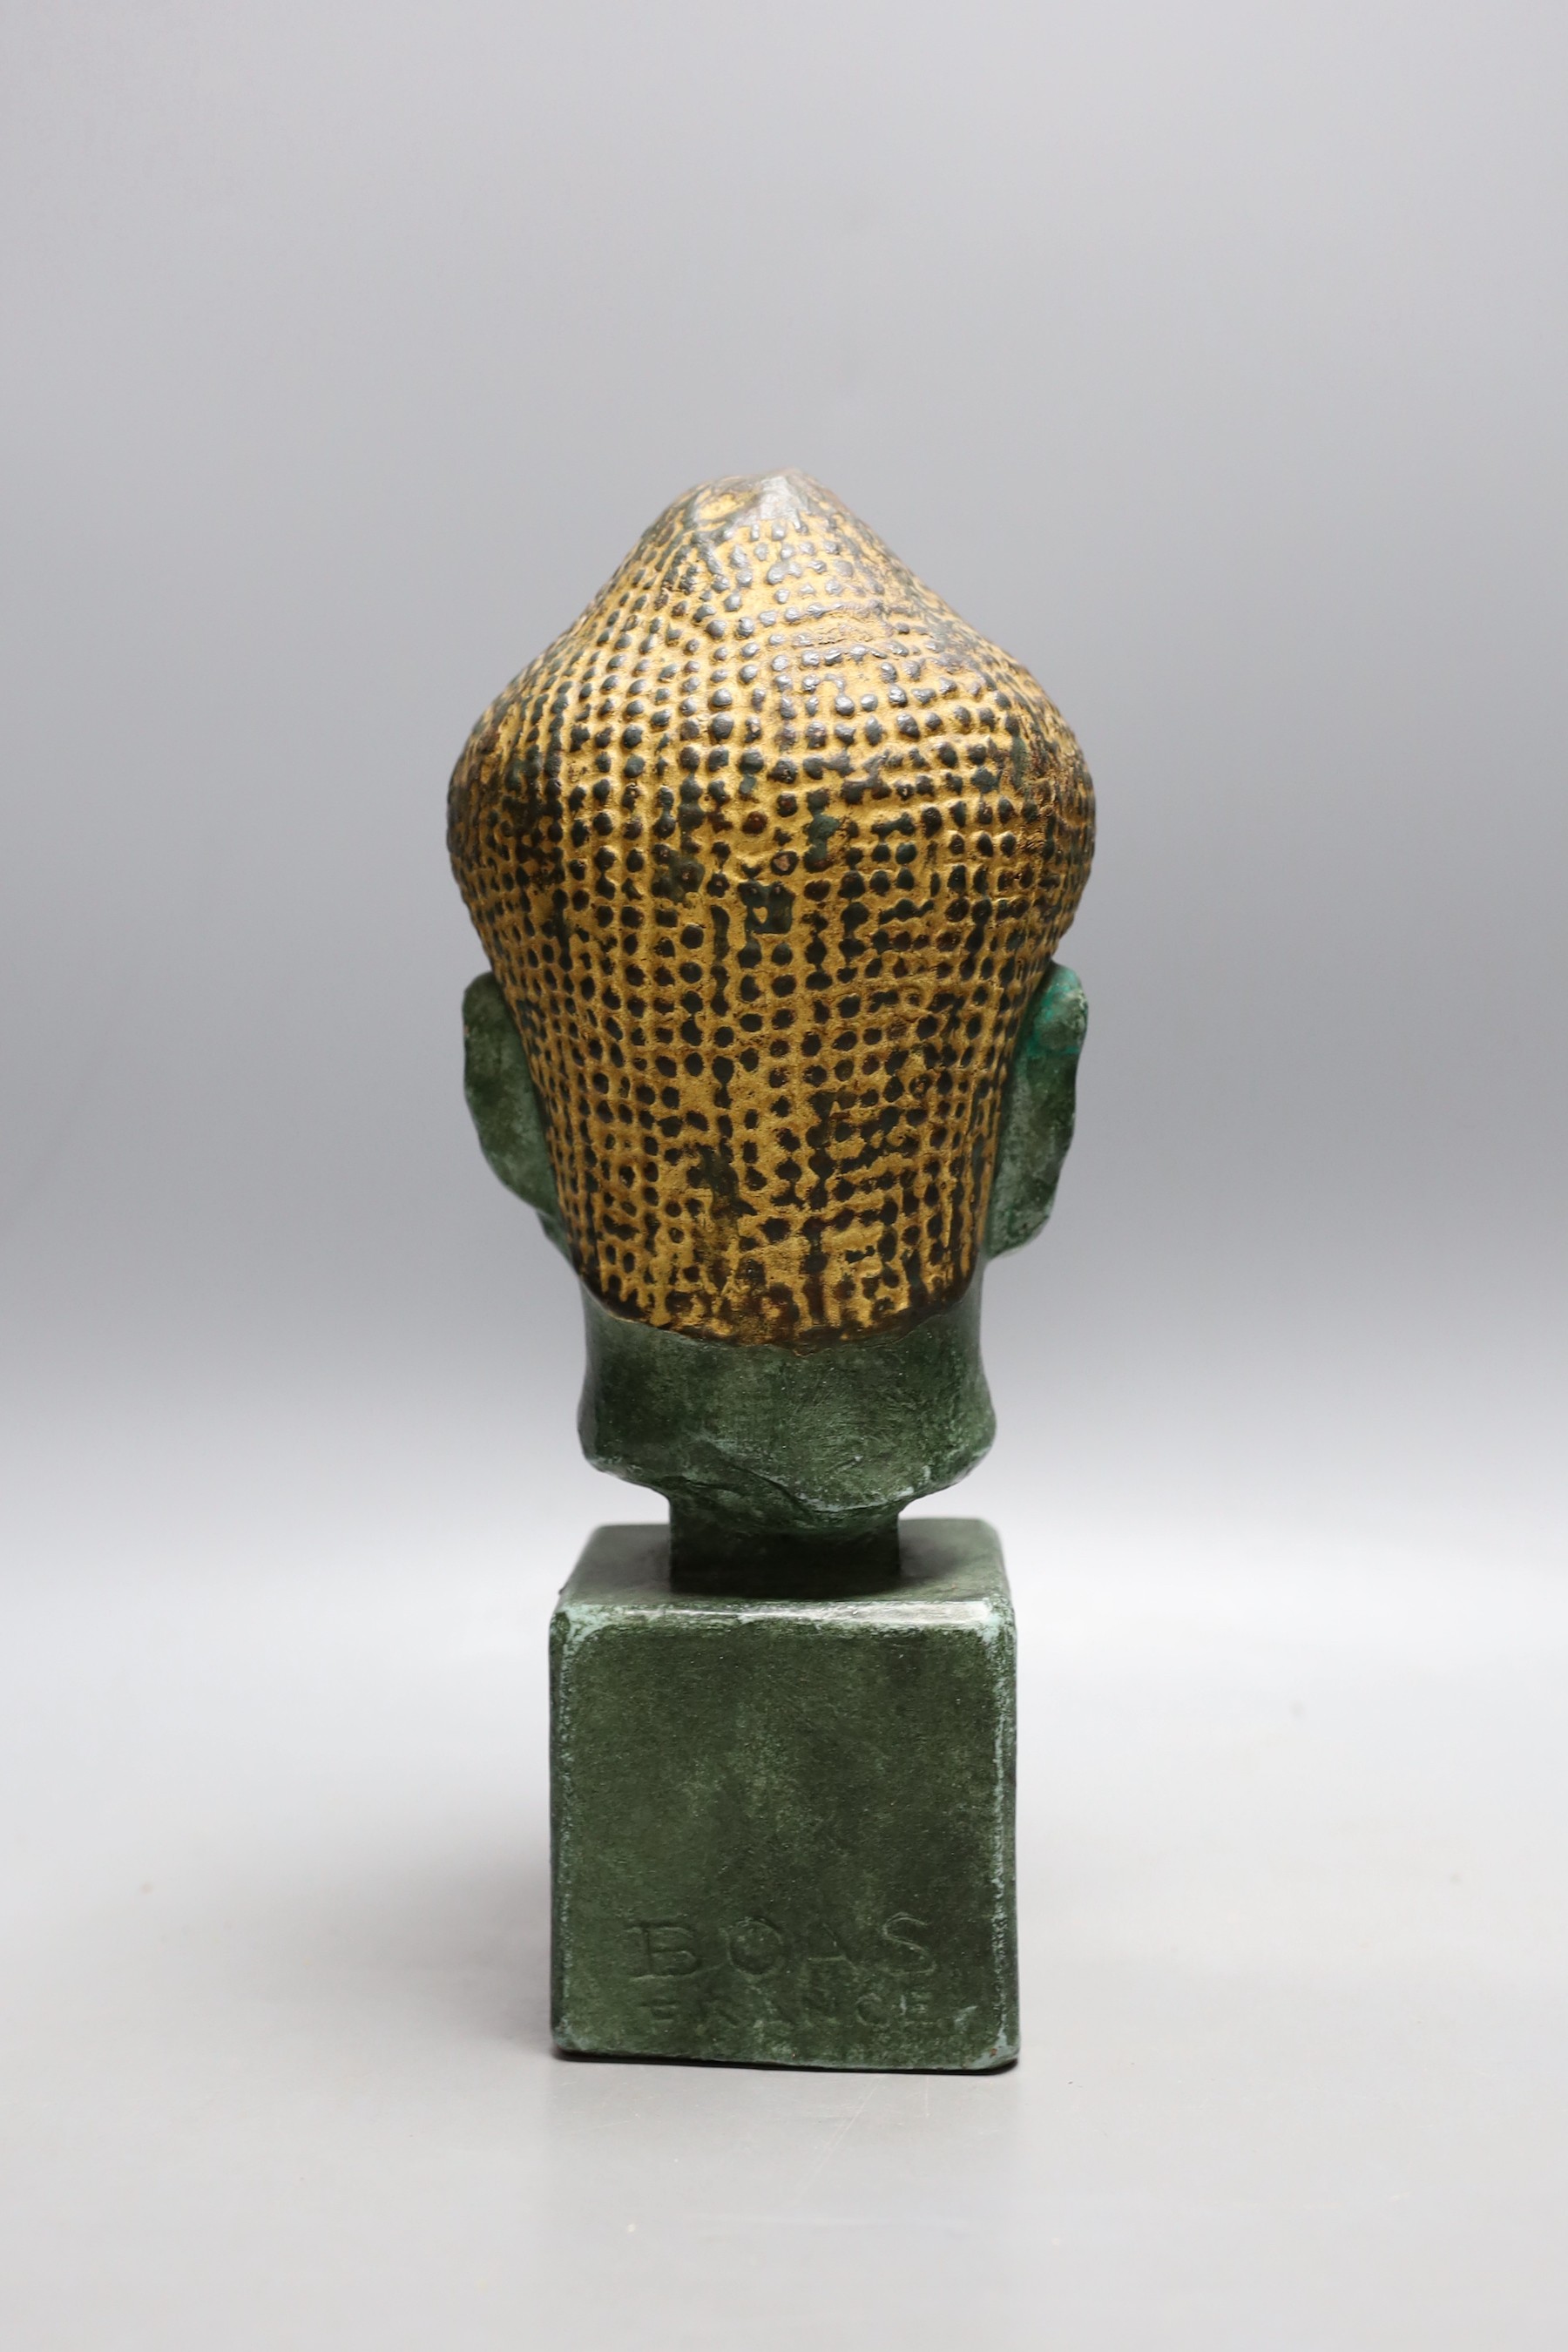 A Paul Bonifas (Boas) painted terracotta Buddha's head, 18cm